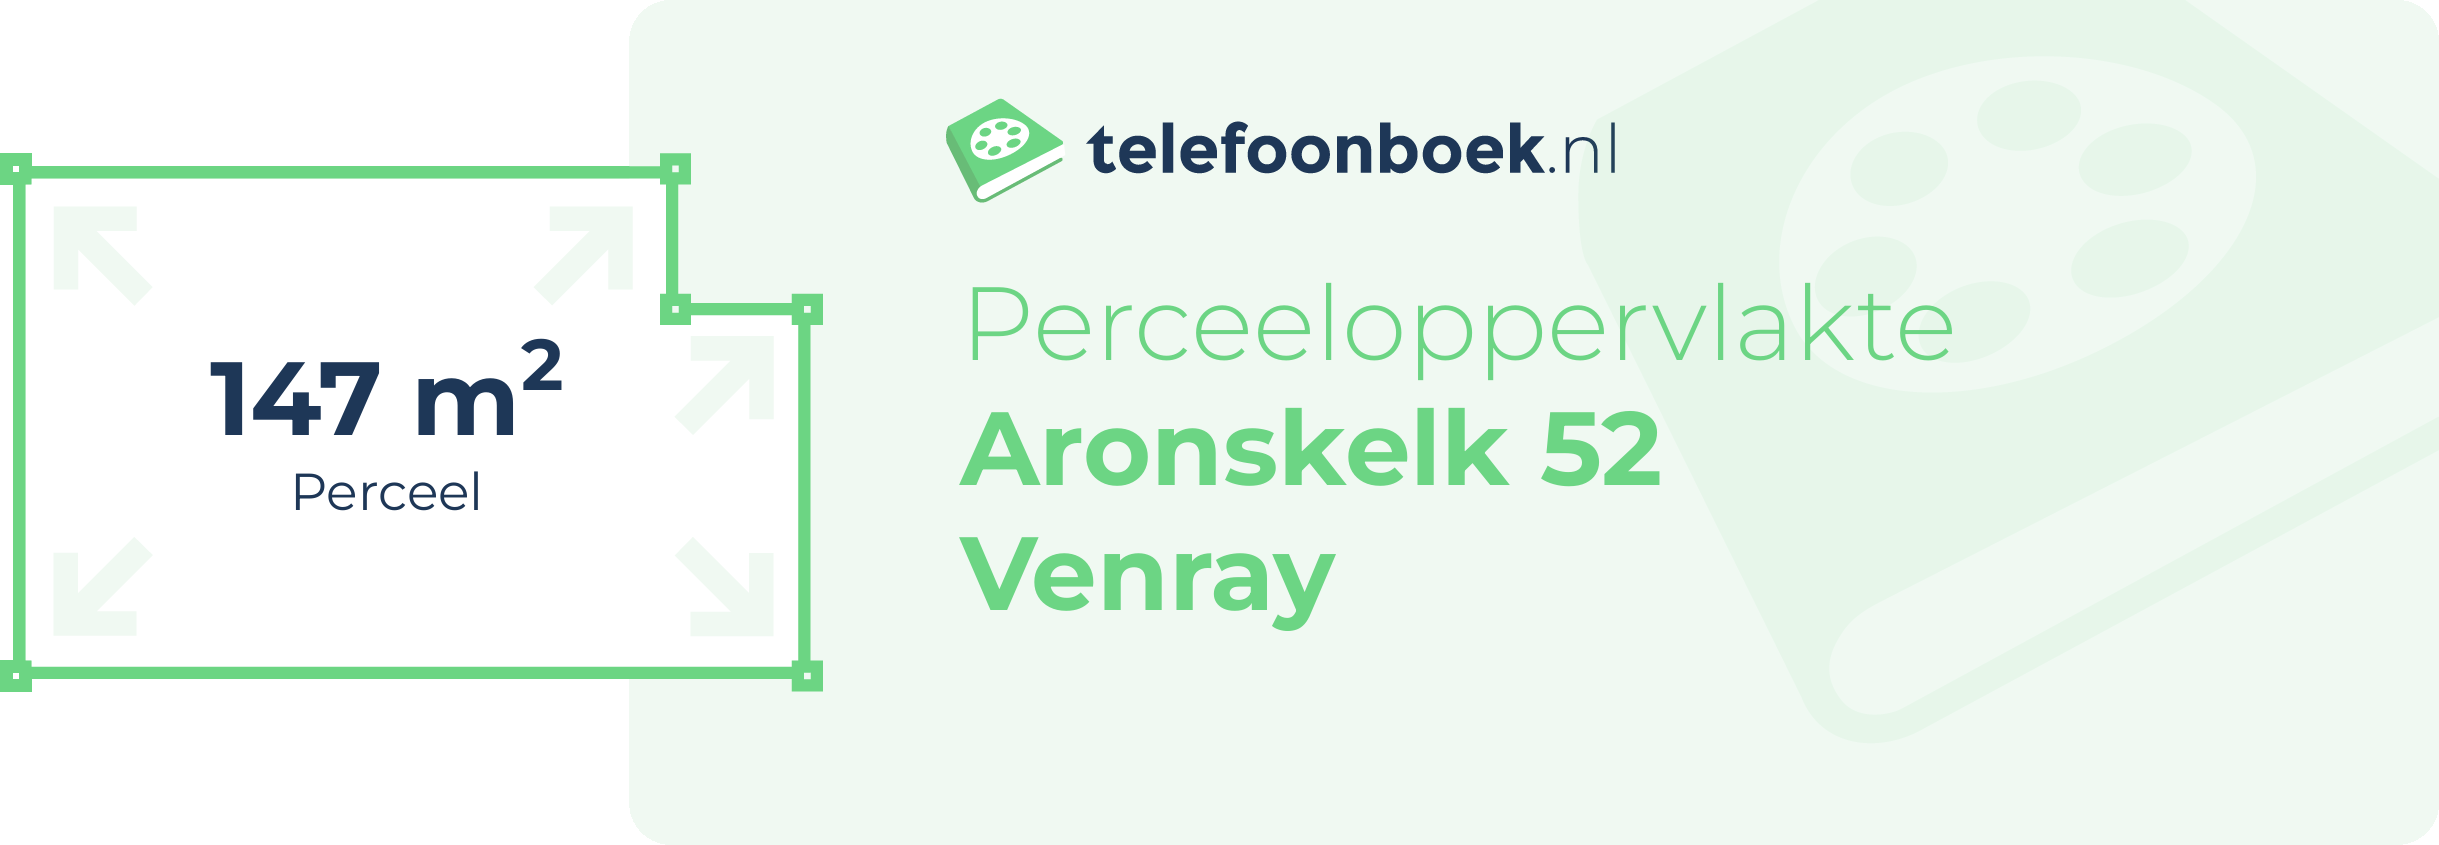 Perceeloppervlakte Aronskelk 52 Venray